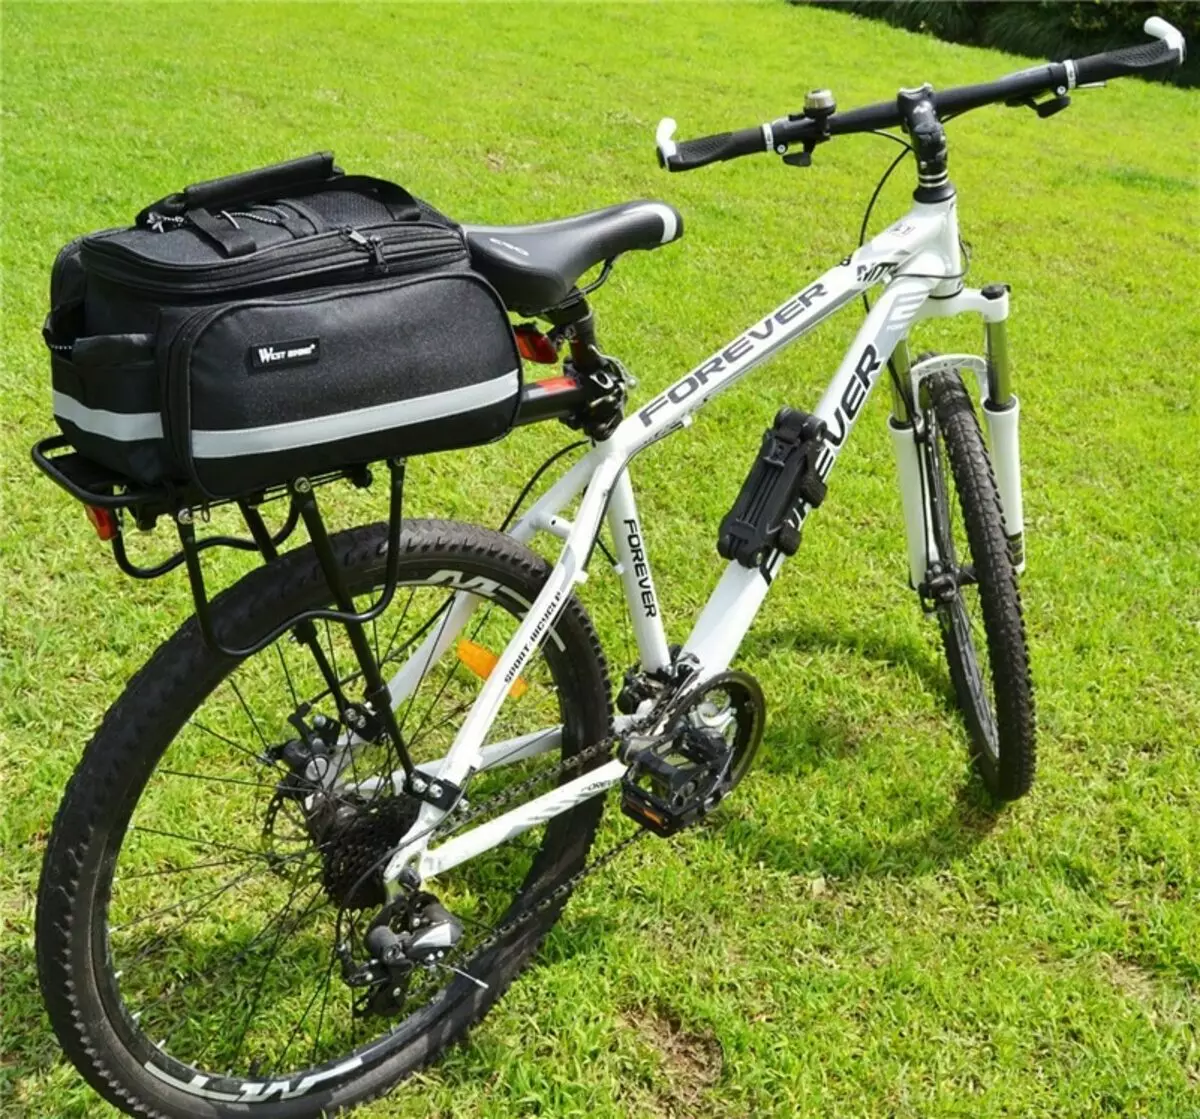 accessoris per a bicicletes: ciclistes útils per a ciclistes, portavasos i coses pràctiques per a bicicletes de muntanya i altres 20174_41